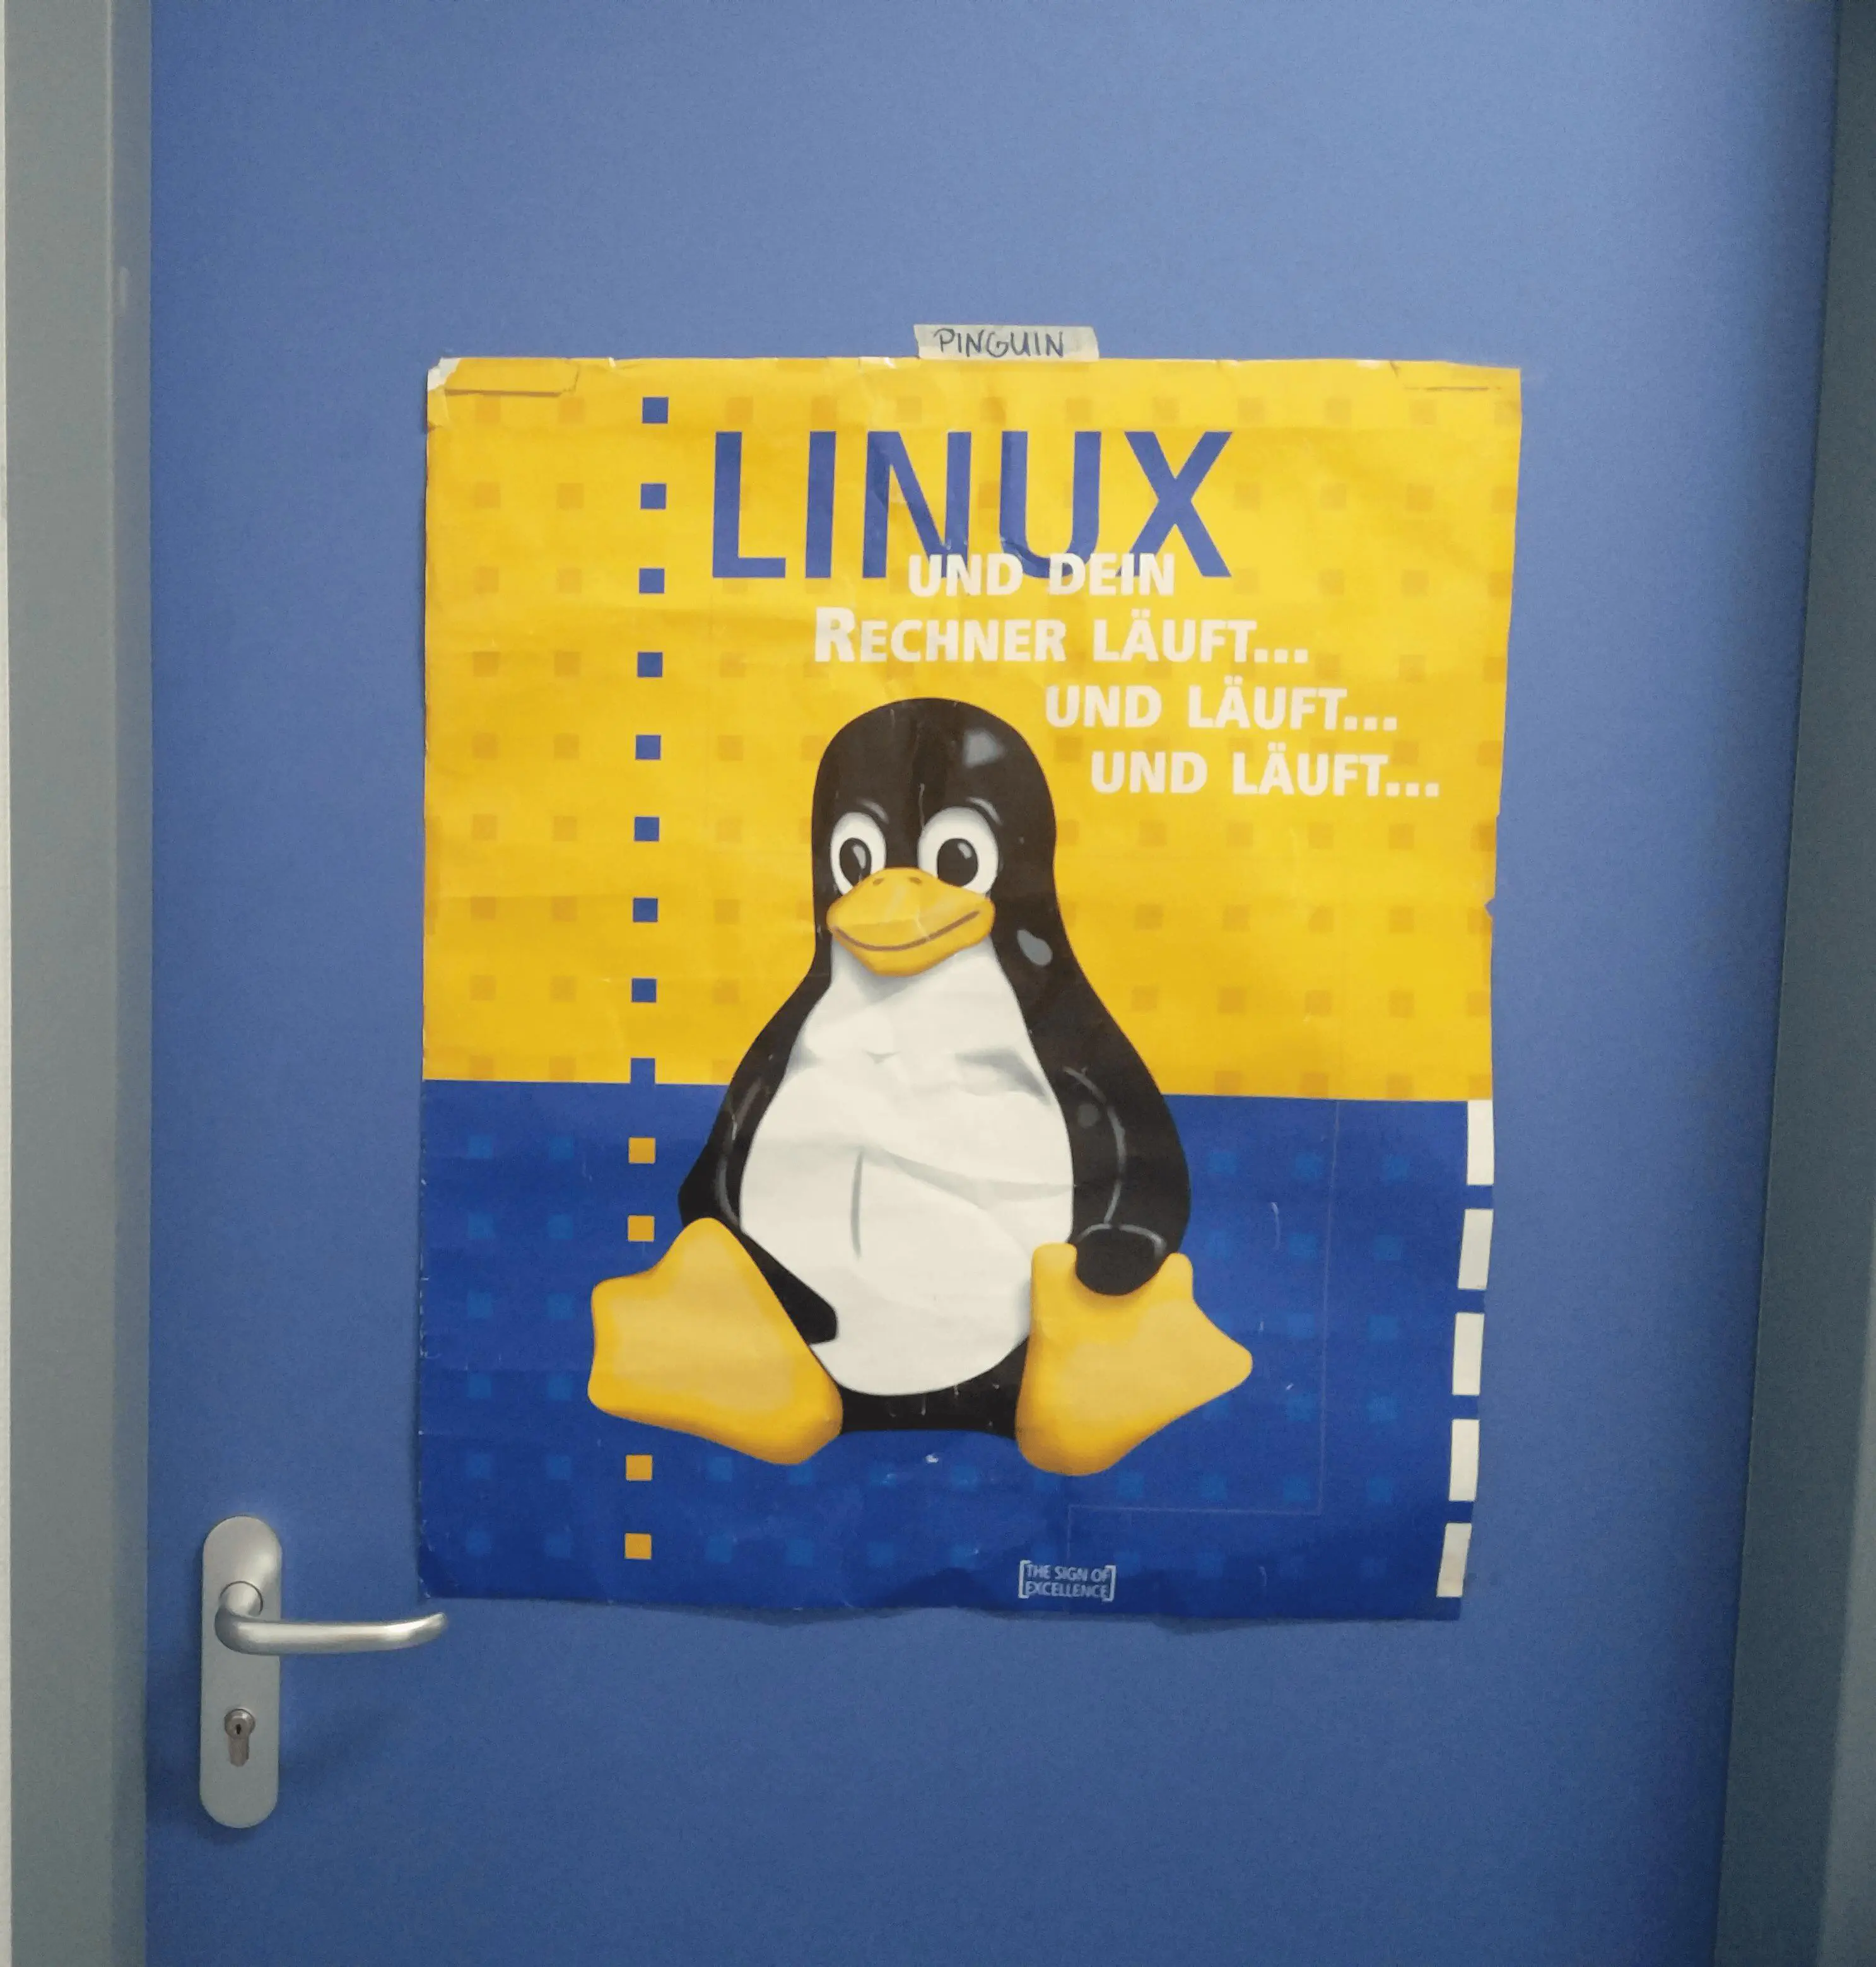 Bild vom Serverraum mit einem Linux Poster